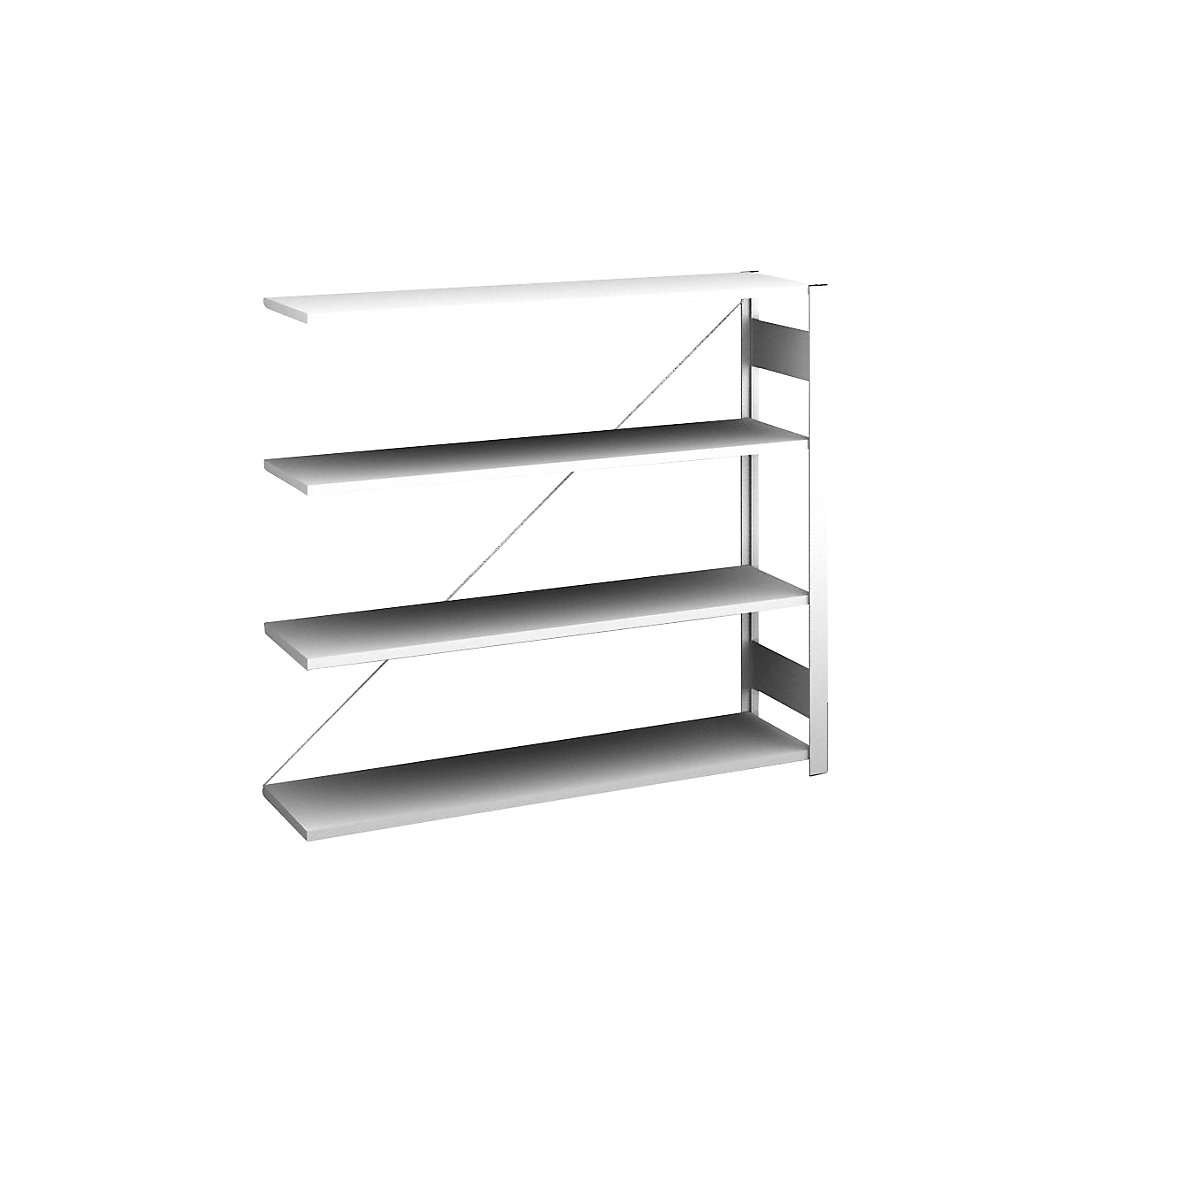 Sideboard shelving unit, light grey – hofe, height 1200 mm, 4 shelves, extension shelf unit, shelf depth 300 mm, max. shelf load 175 kg-1